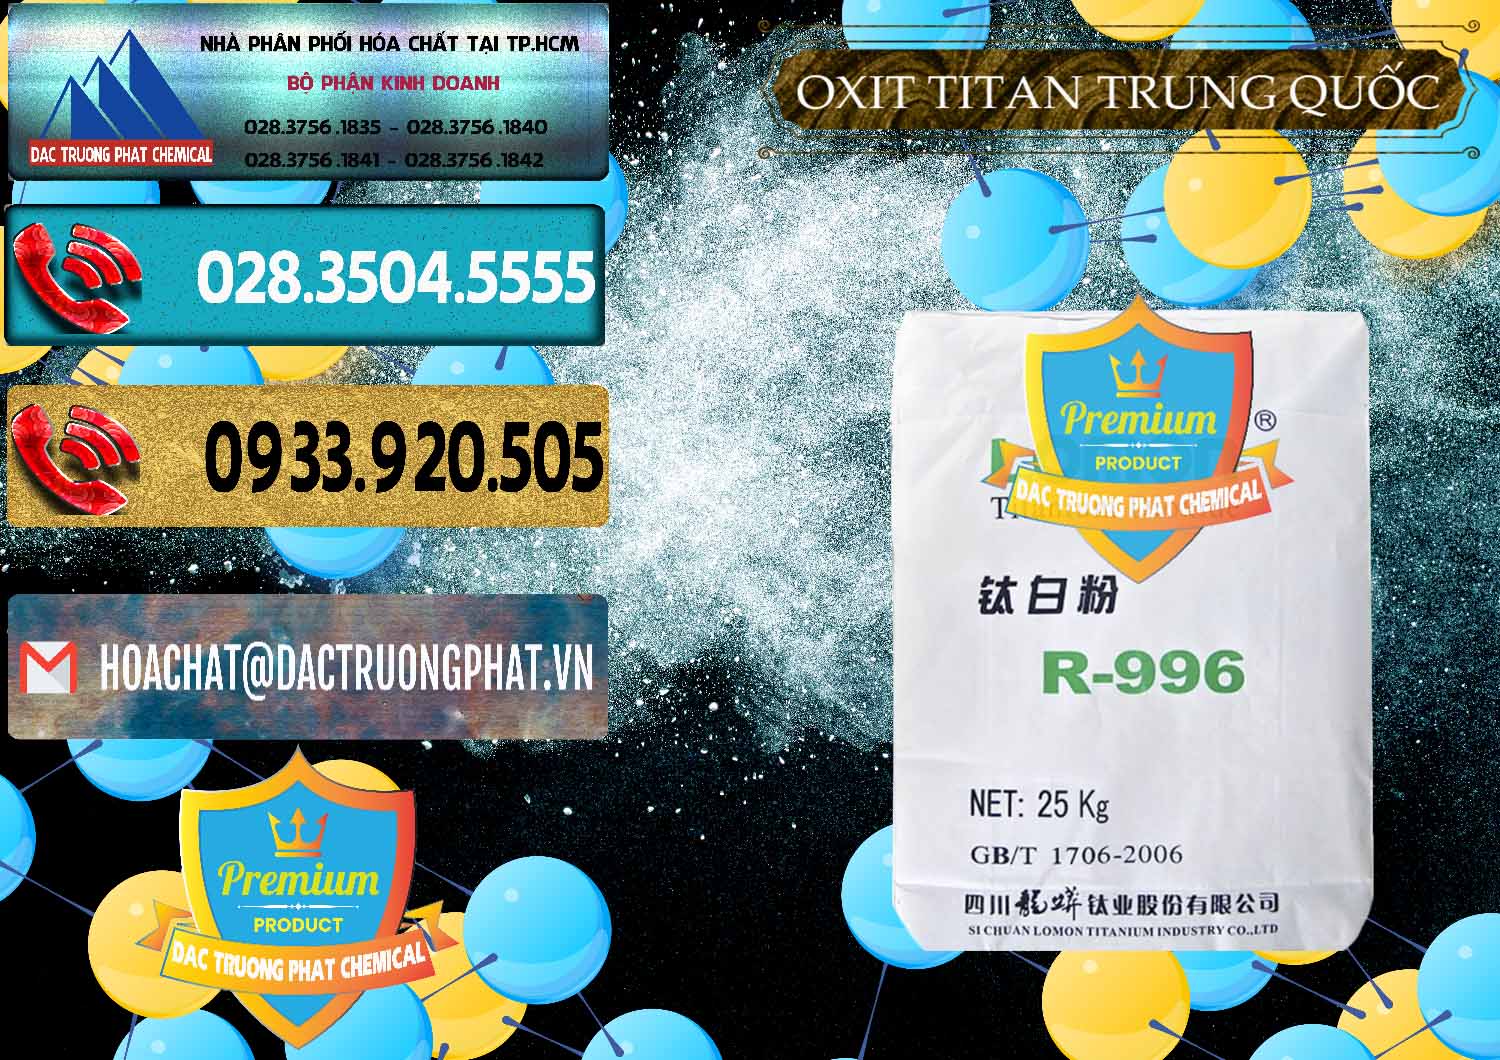 Cty chuyên cung cấp - bán Oxit Titan KA100 – Tio2 Trung Quốc China - 0398 - Đơn vị phân phối & cung cấp hóa chất tại TP.HCM - hoachatdetnhuom.com